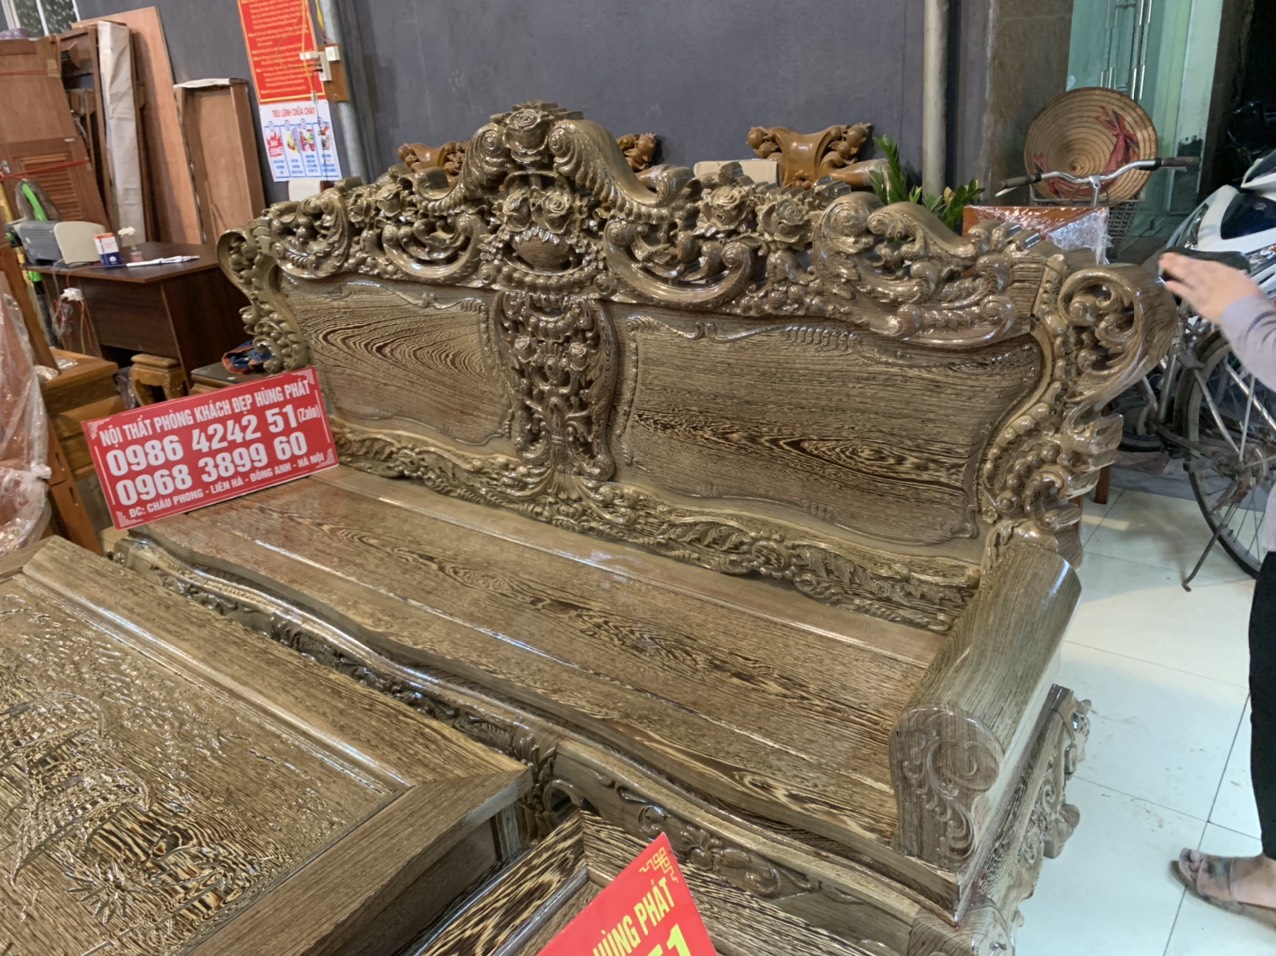 Bộ Bàn Ghế Hoàng Gia Gỗ Mun được chế tác bởi những nghệ nhân tài ba, với lối thiết kế hoàng gia, đường nét sang trọng và đắt giá. Hình ảnh này sẽ giúp bạn nhìn thấy được sự quyền quý, đẳng cấp và vẻ đẹp hoàng gia của bộ bàn ghế gỗ mun.